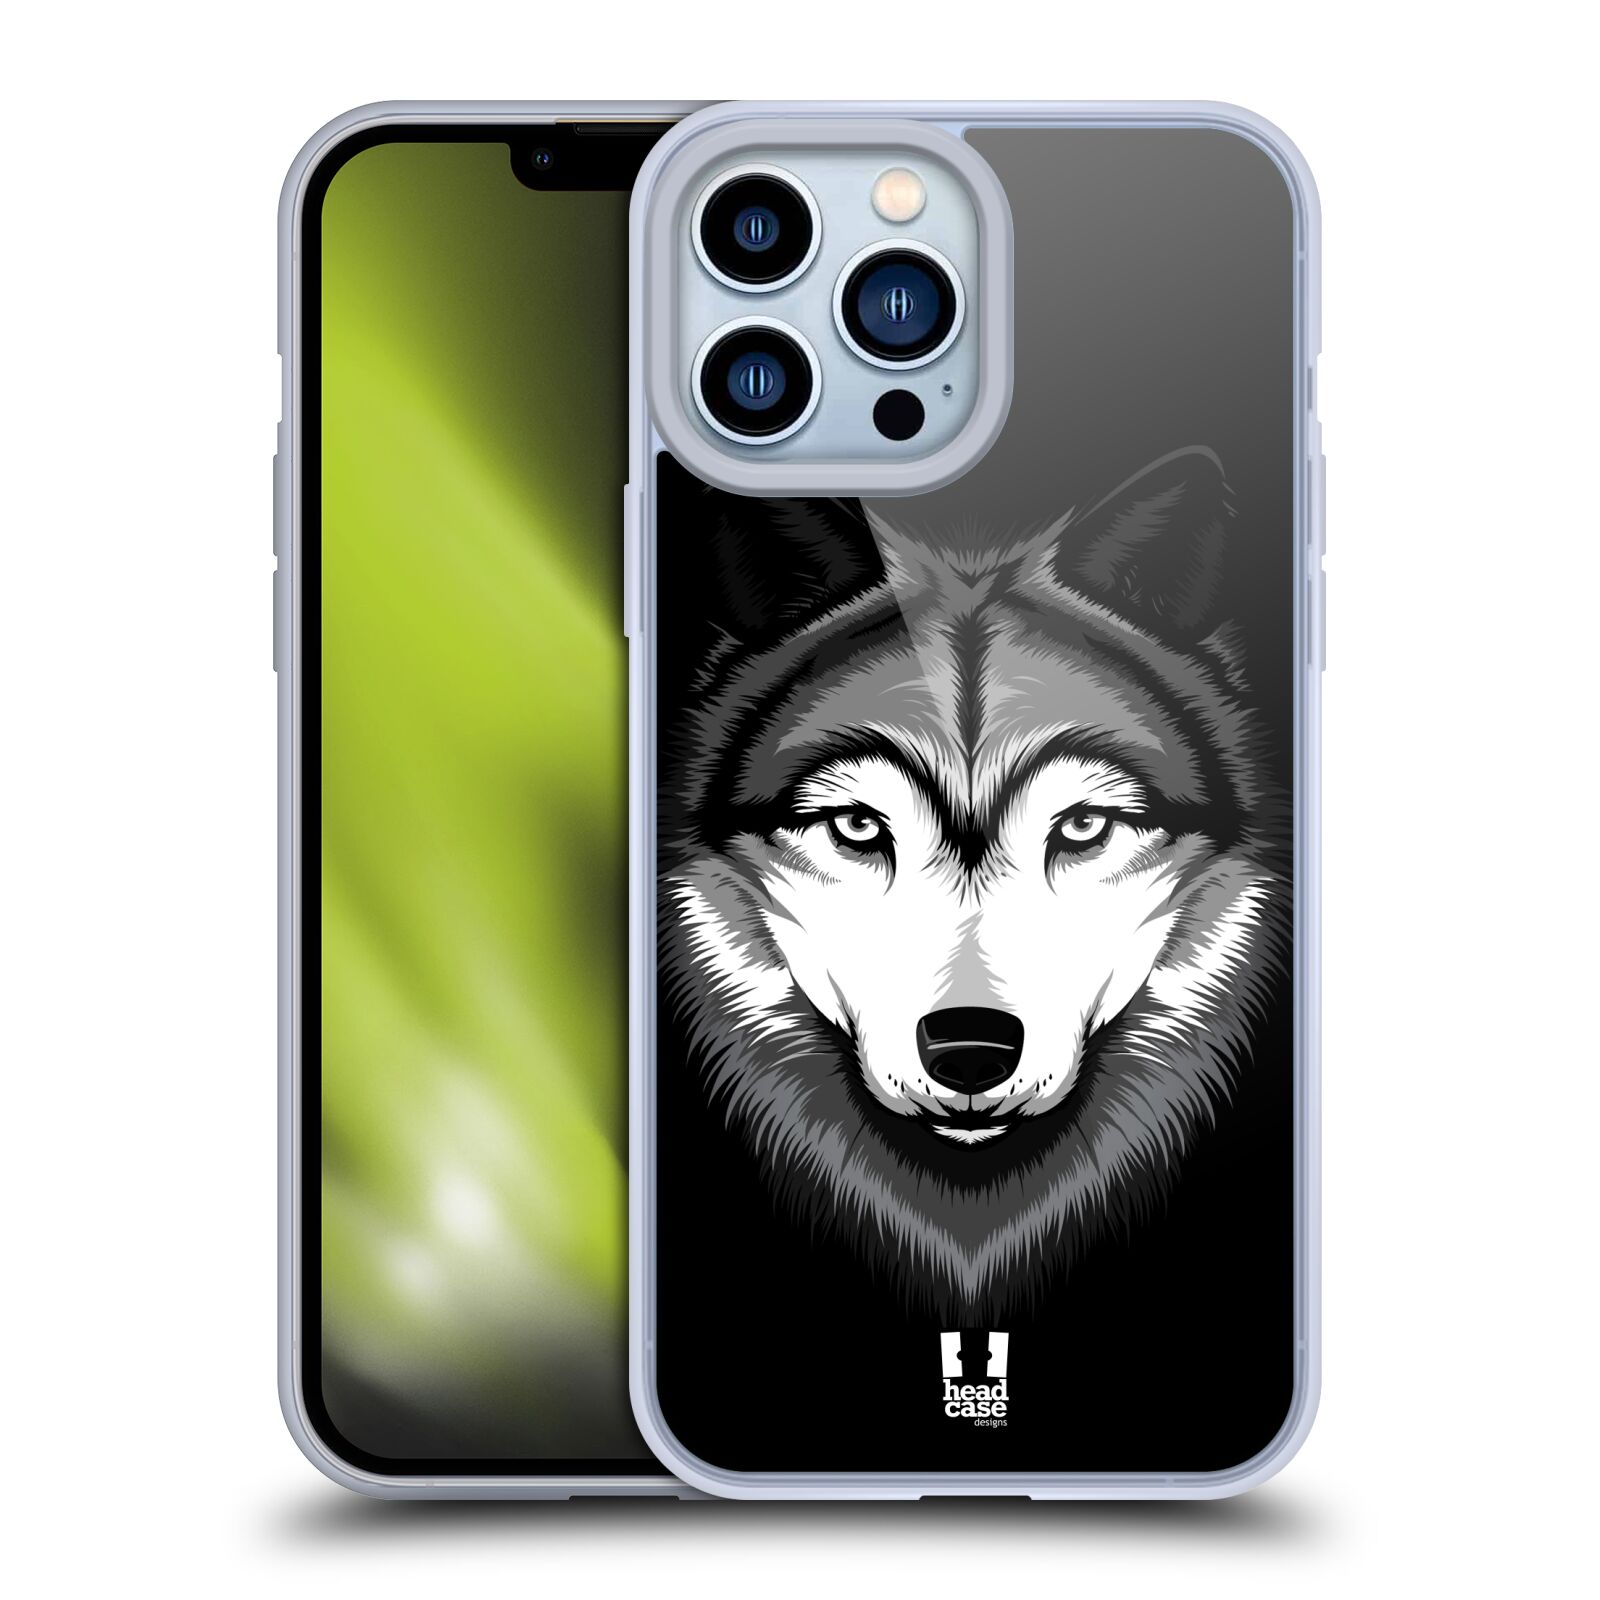 Plastový obal HEAD CASE na mobil Apple Iphone 13 PRO MAX vzor Zvíře kreslená tvář 2 vlk